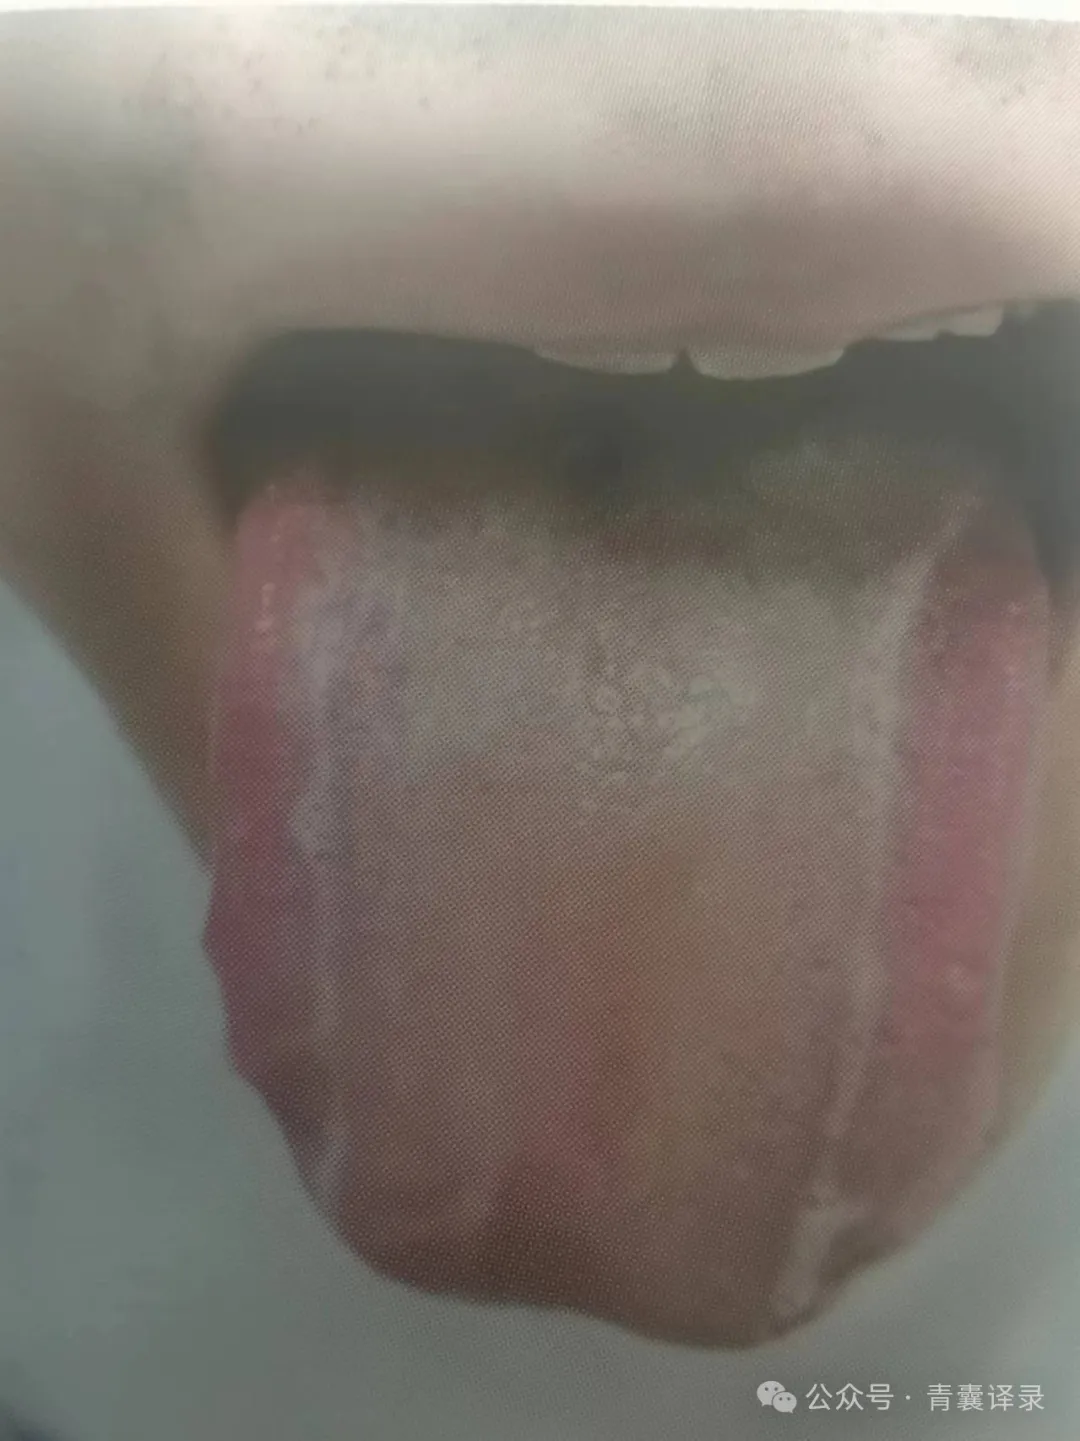 快看看你的舌头有没有这种肝郁线